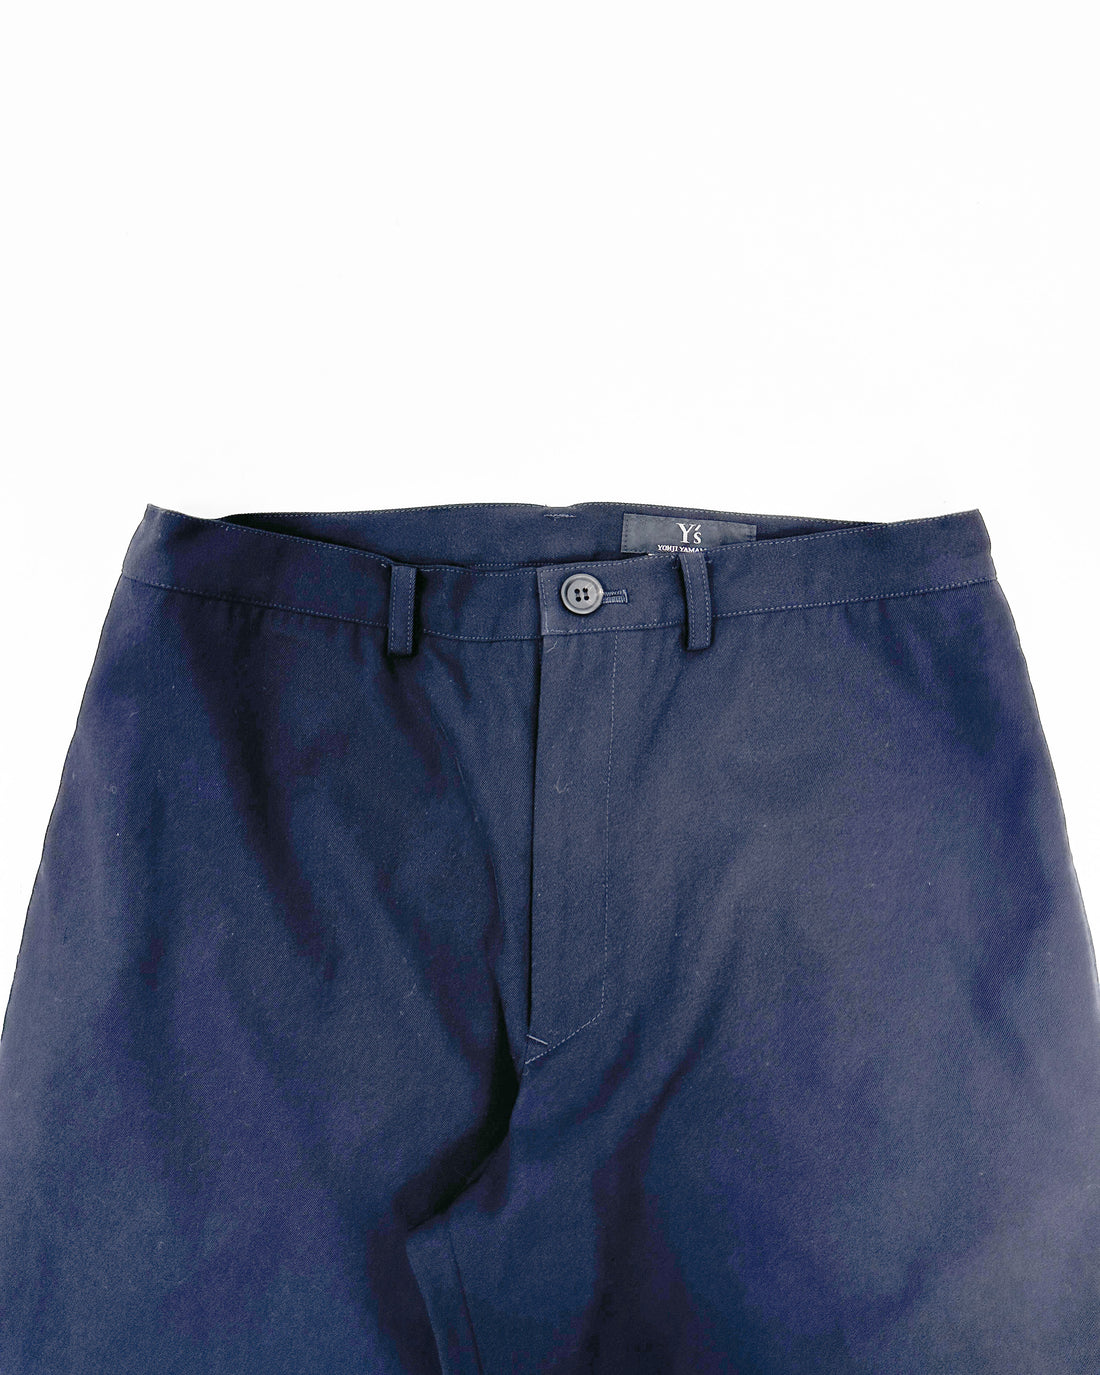 Yohji Yamamoto Wool Thin Navy Blue Pants 2008